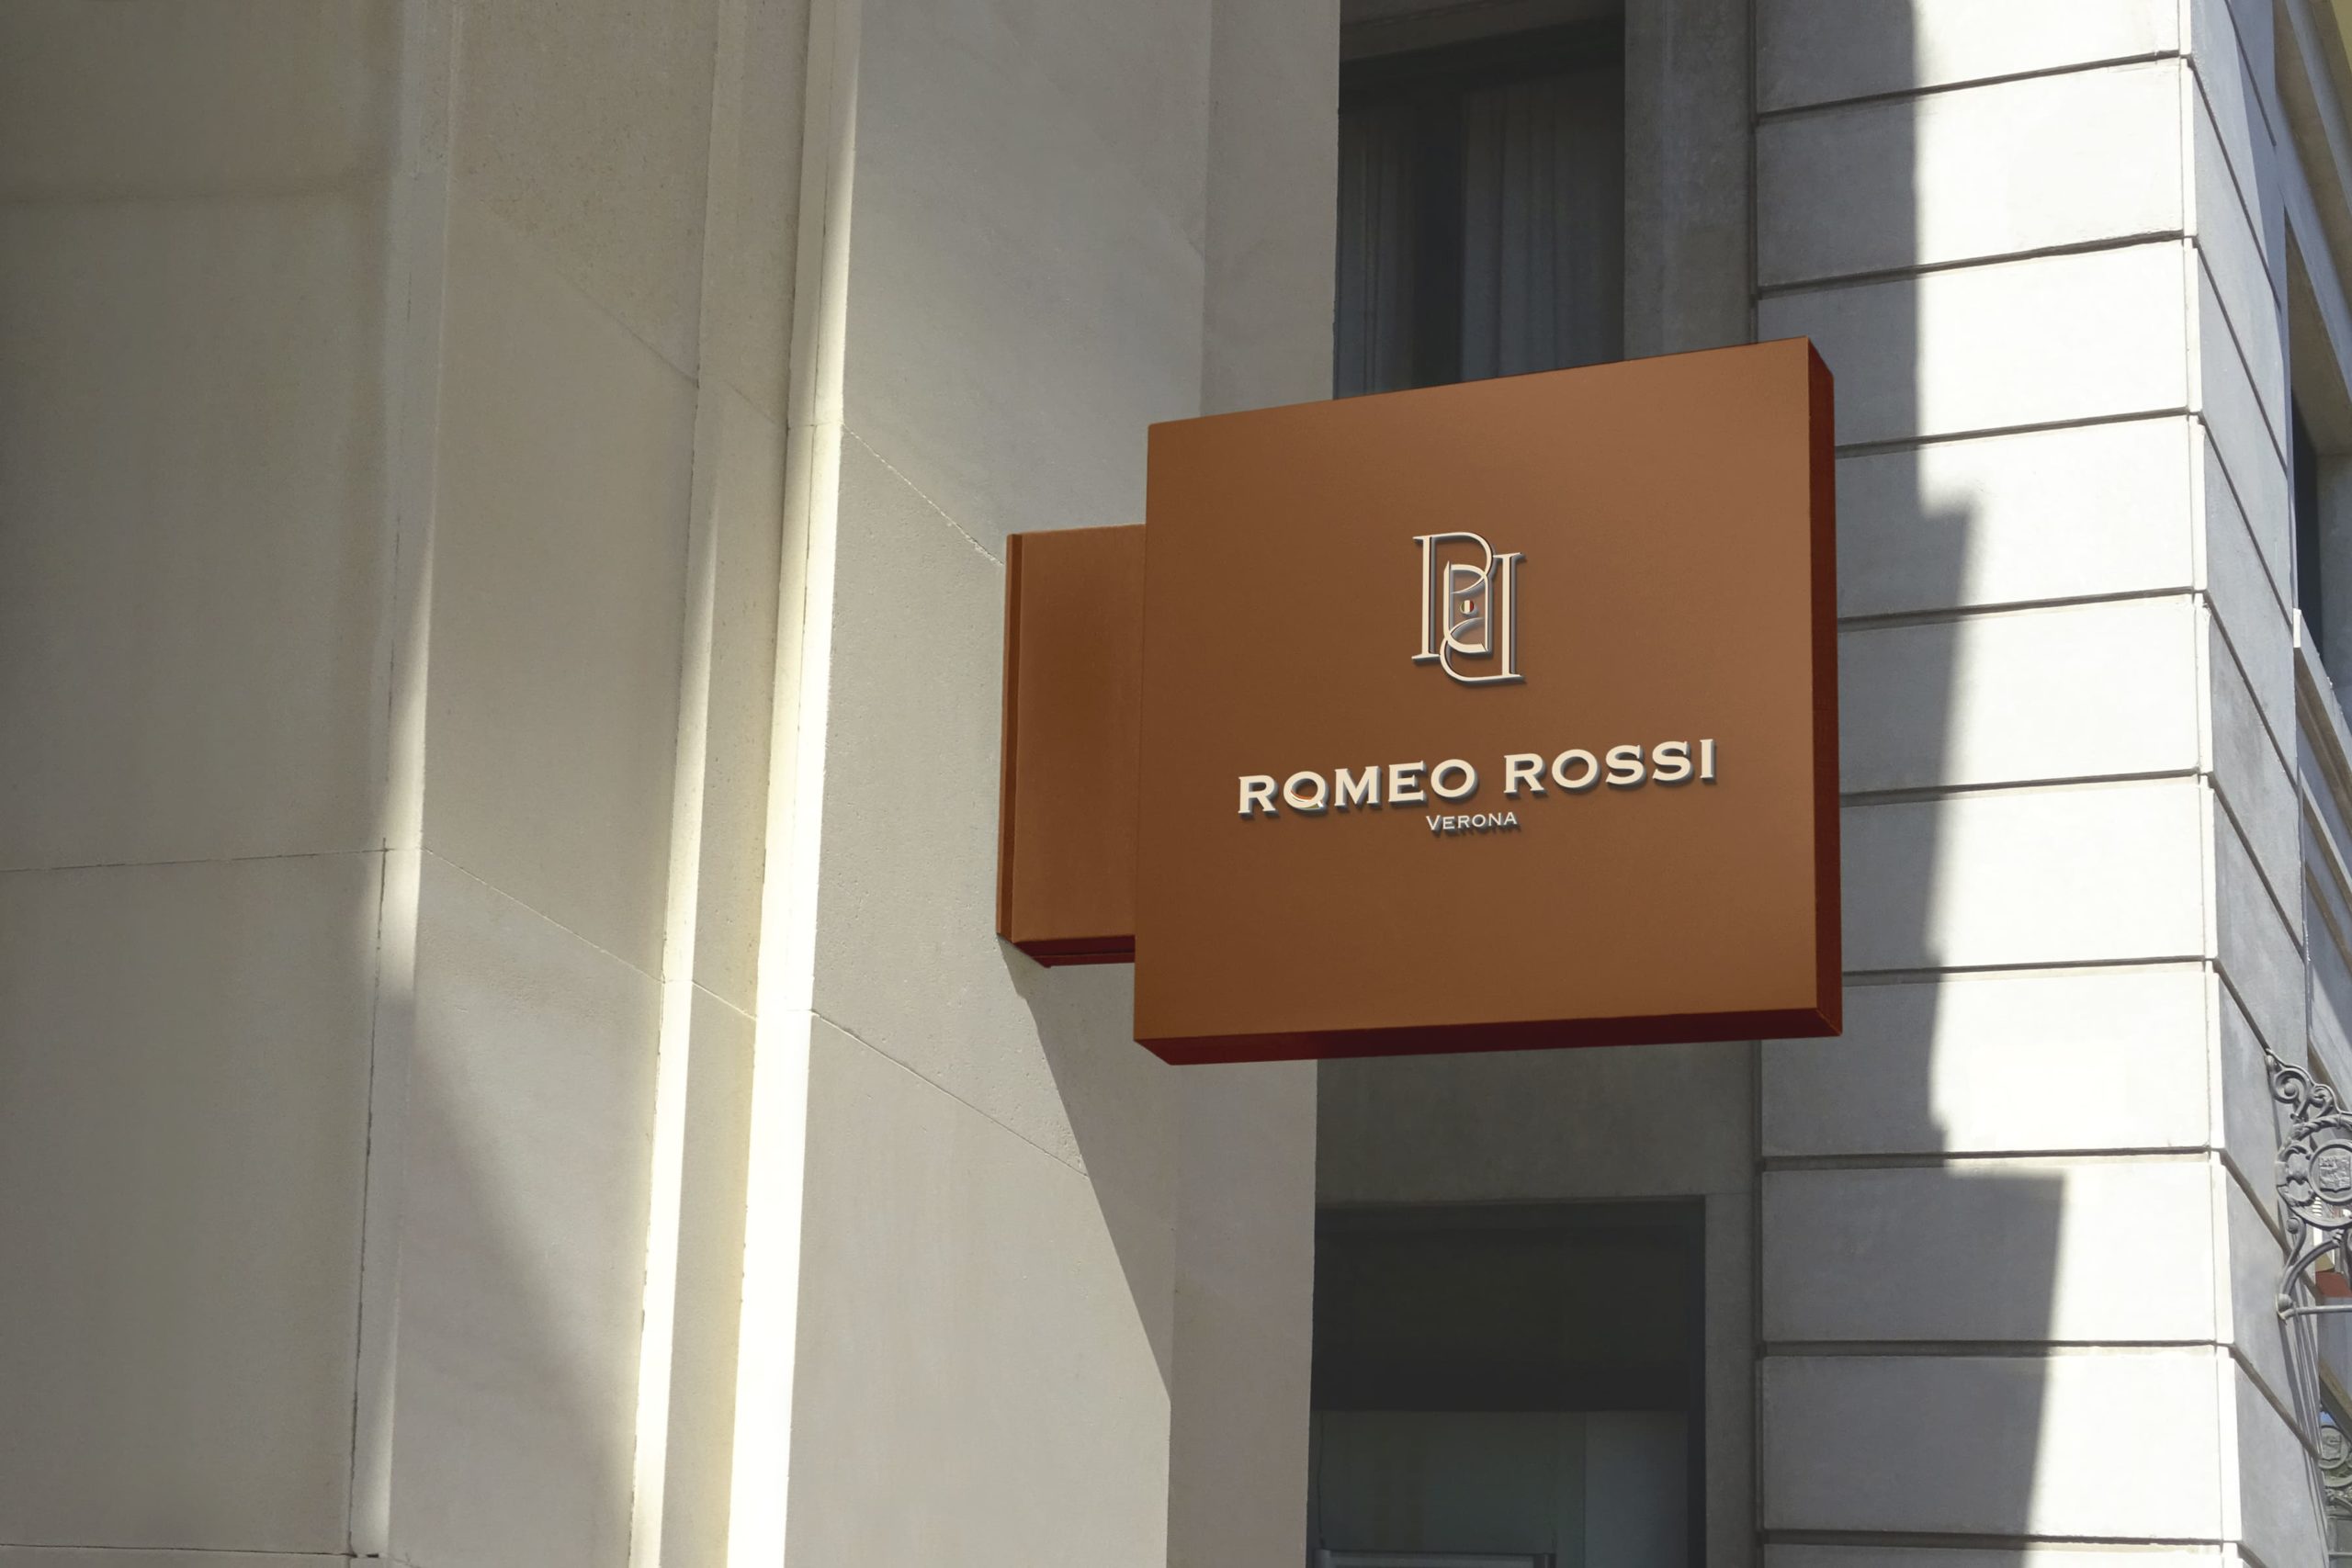 Romeo Rossi gastronomic store